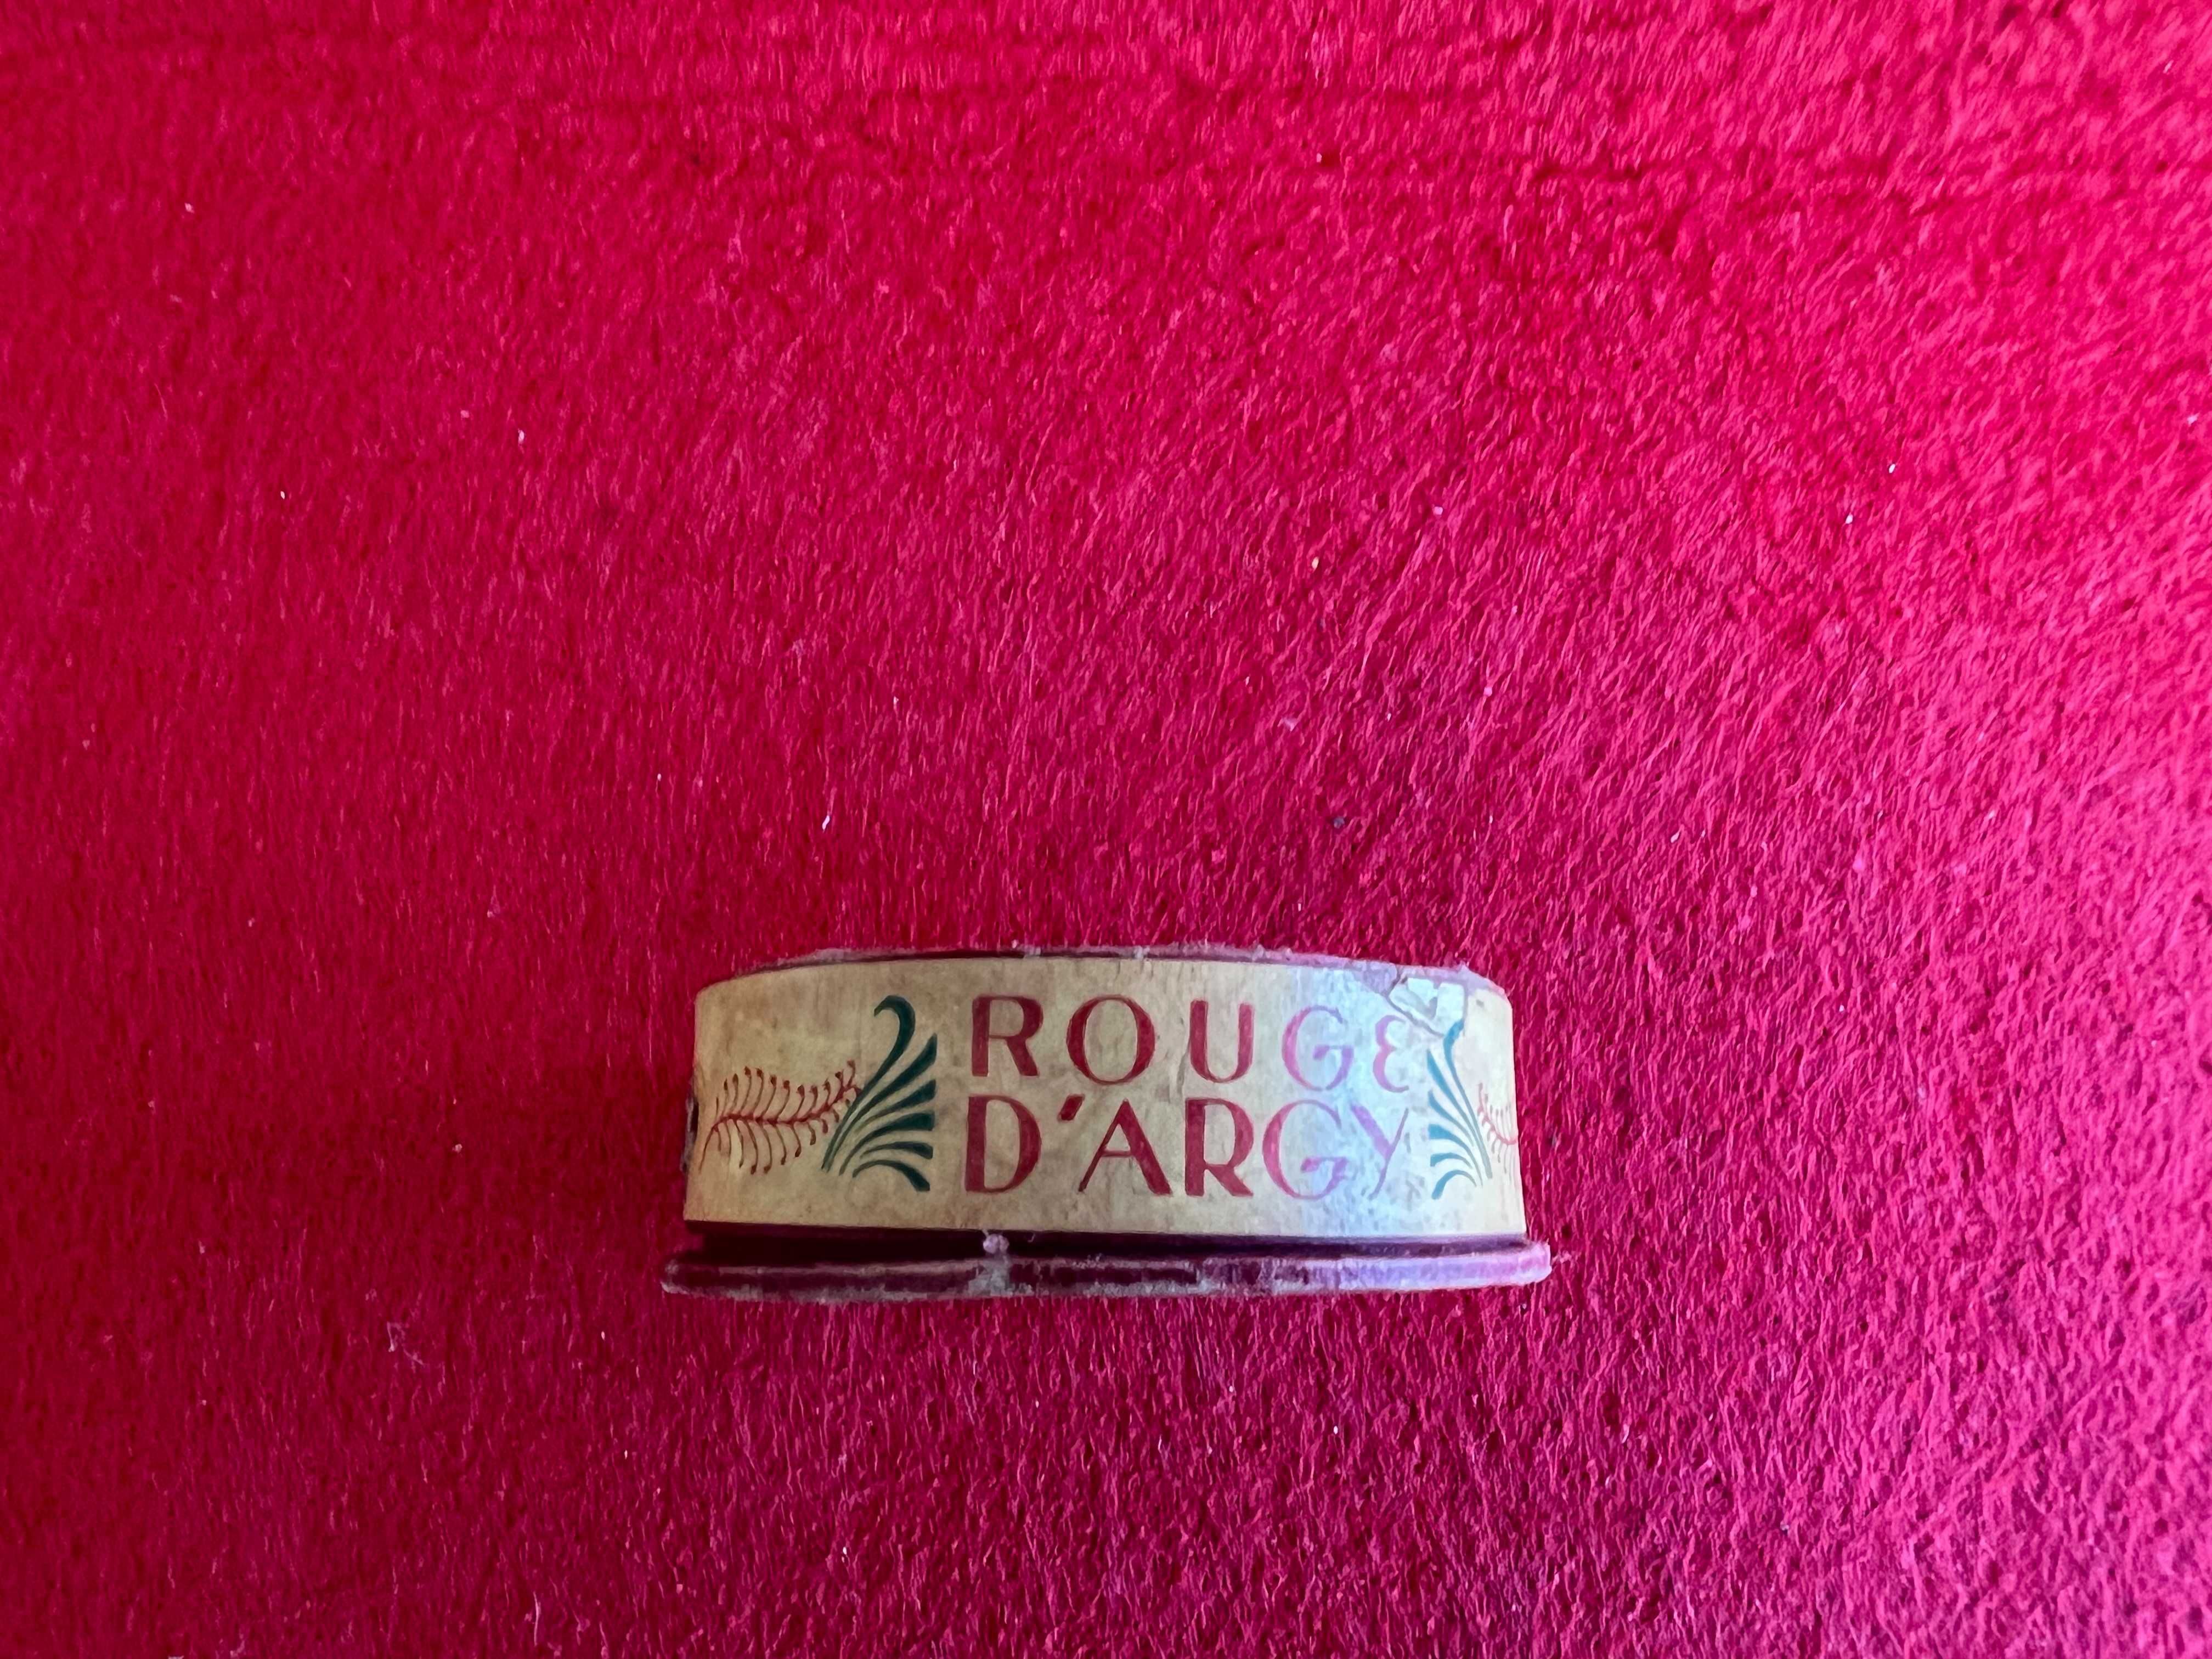 Caixinha de Rouge Francesa - Muito antiga